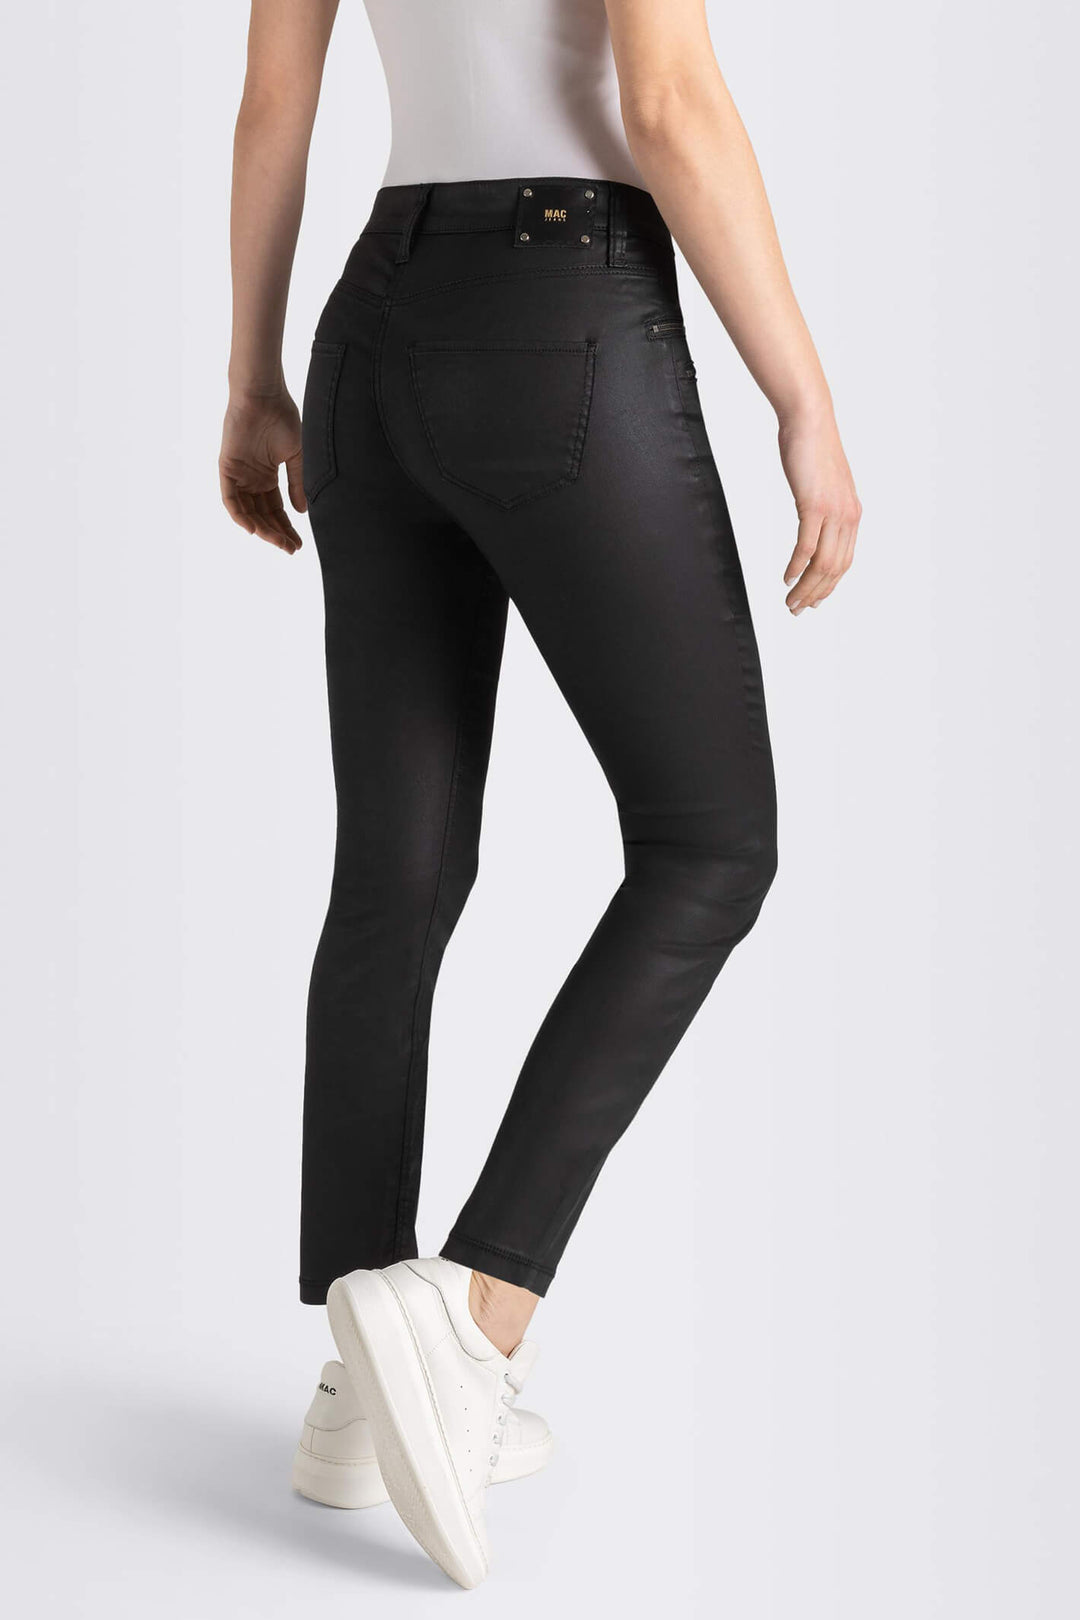 Mac 5761-00-0465L 090 Black Skinny Zip Jeans - Olivia Grace Fashion